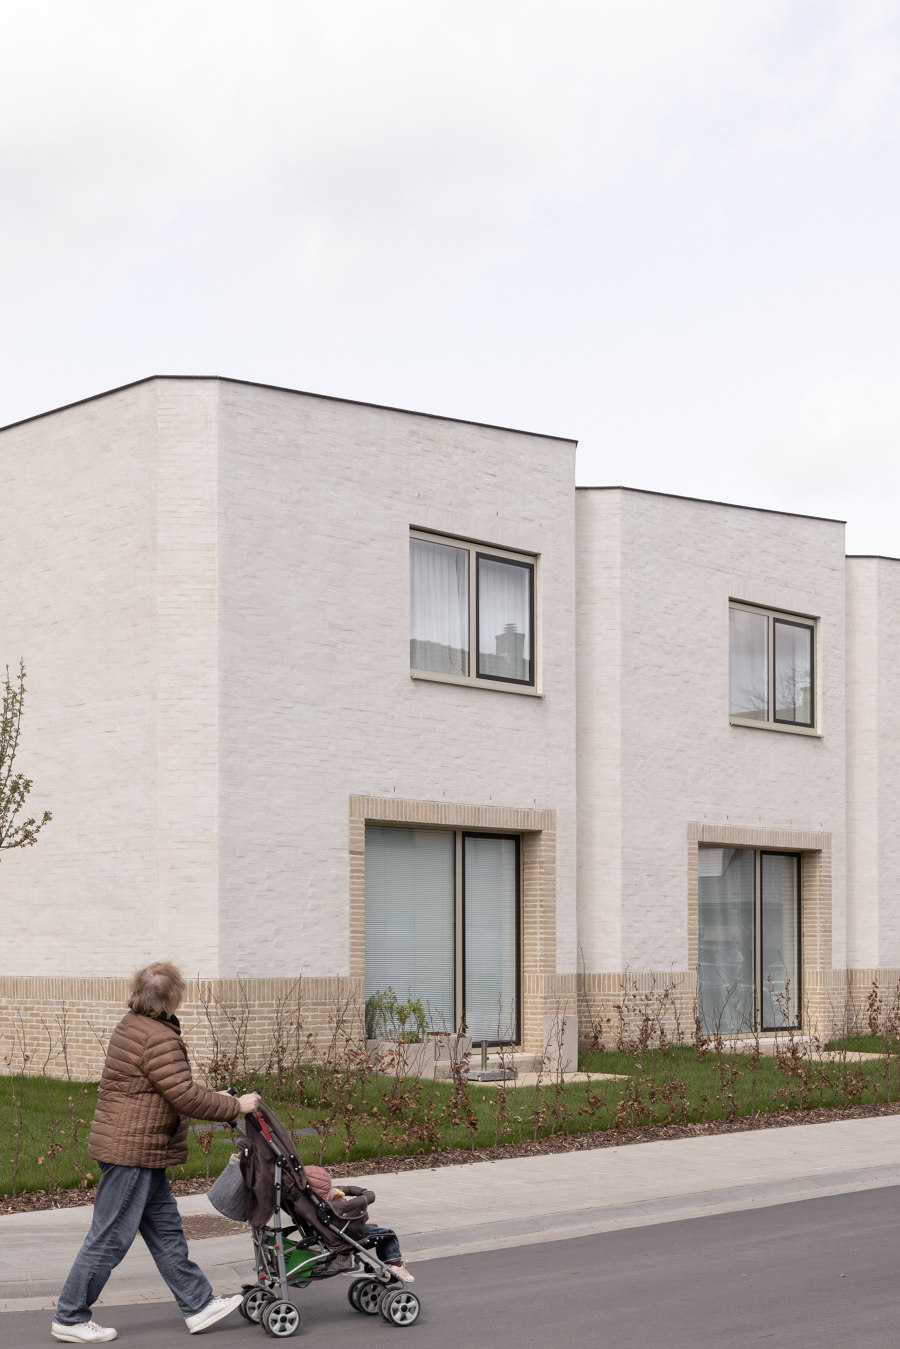 Ten Boomgaard Housing von WE-S architecten | Mehrfamilienhäuser